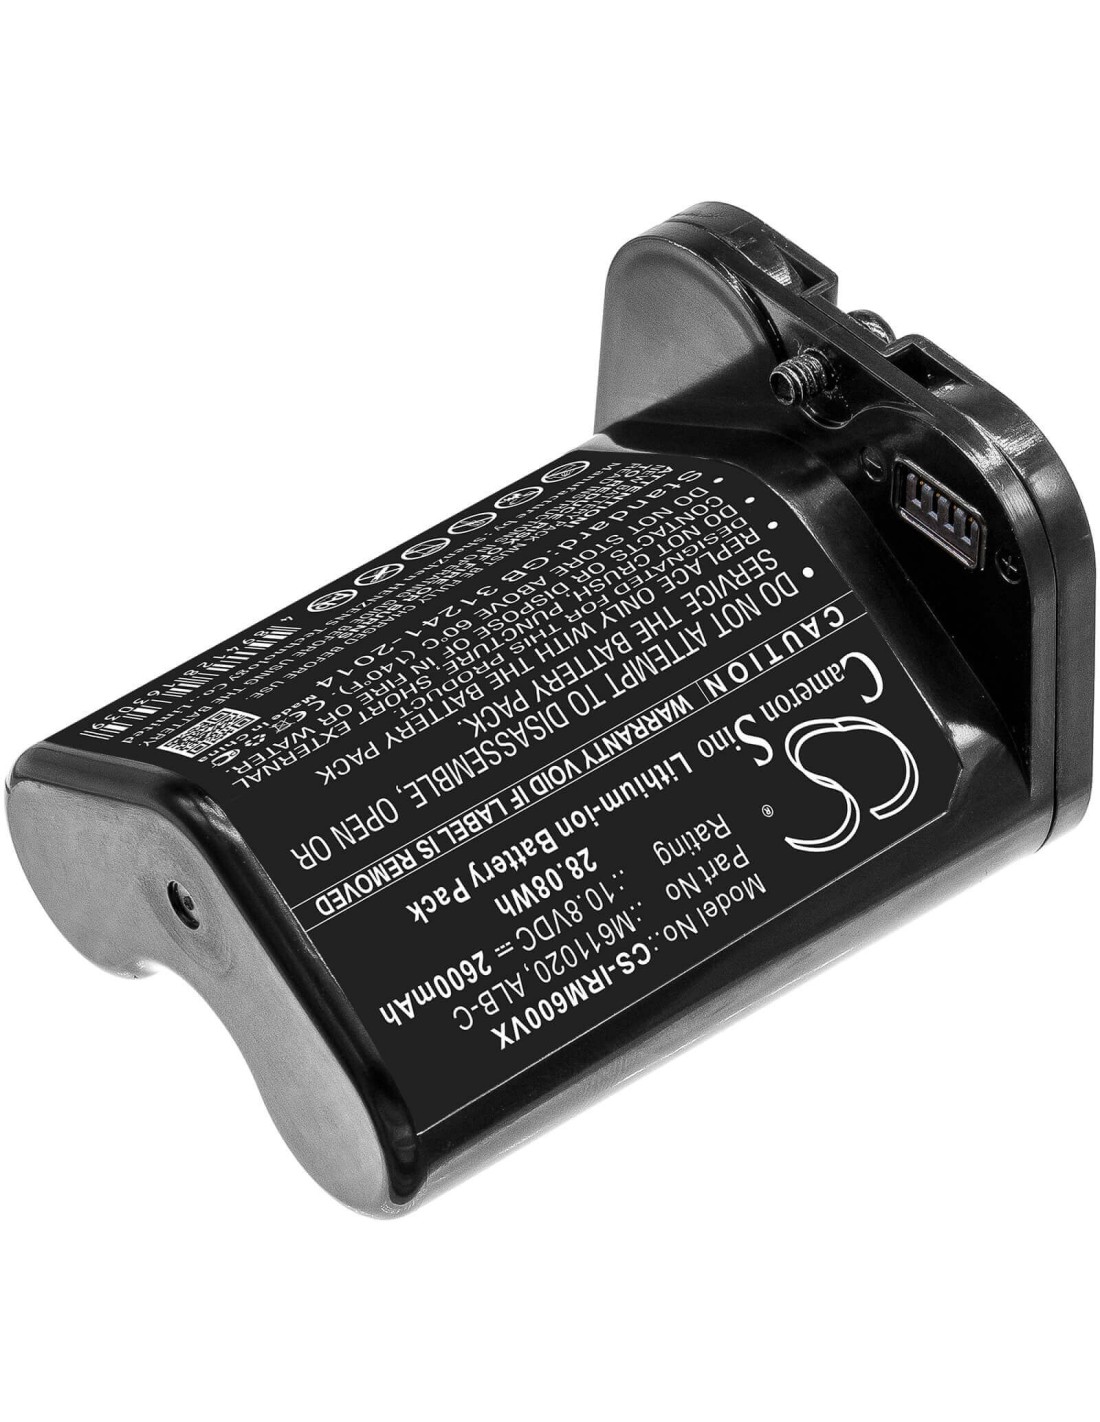 Battery for Irobot, Braava, Jet, M6 10.8V, 2600mAh - 28.08Wh